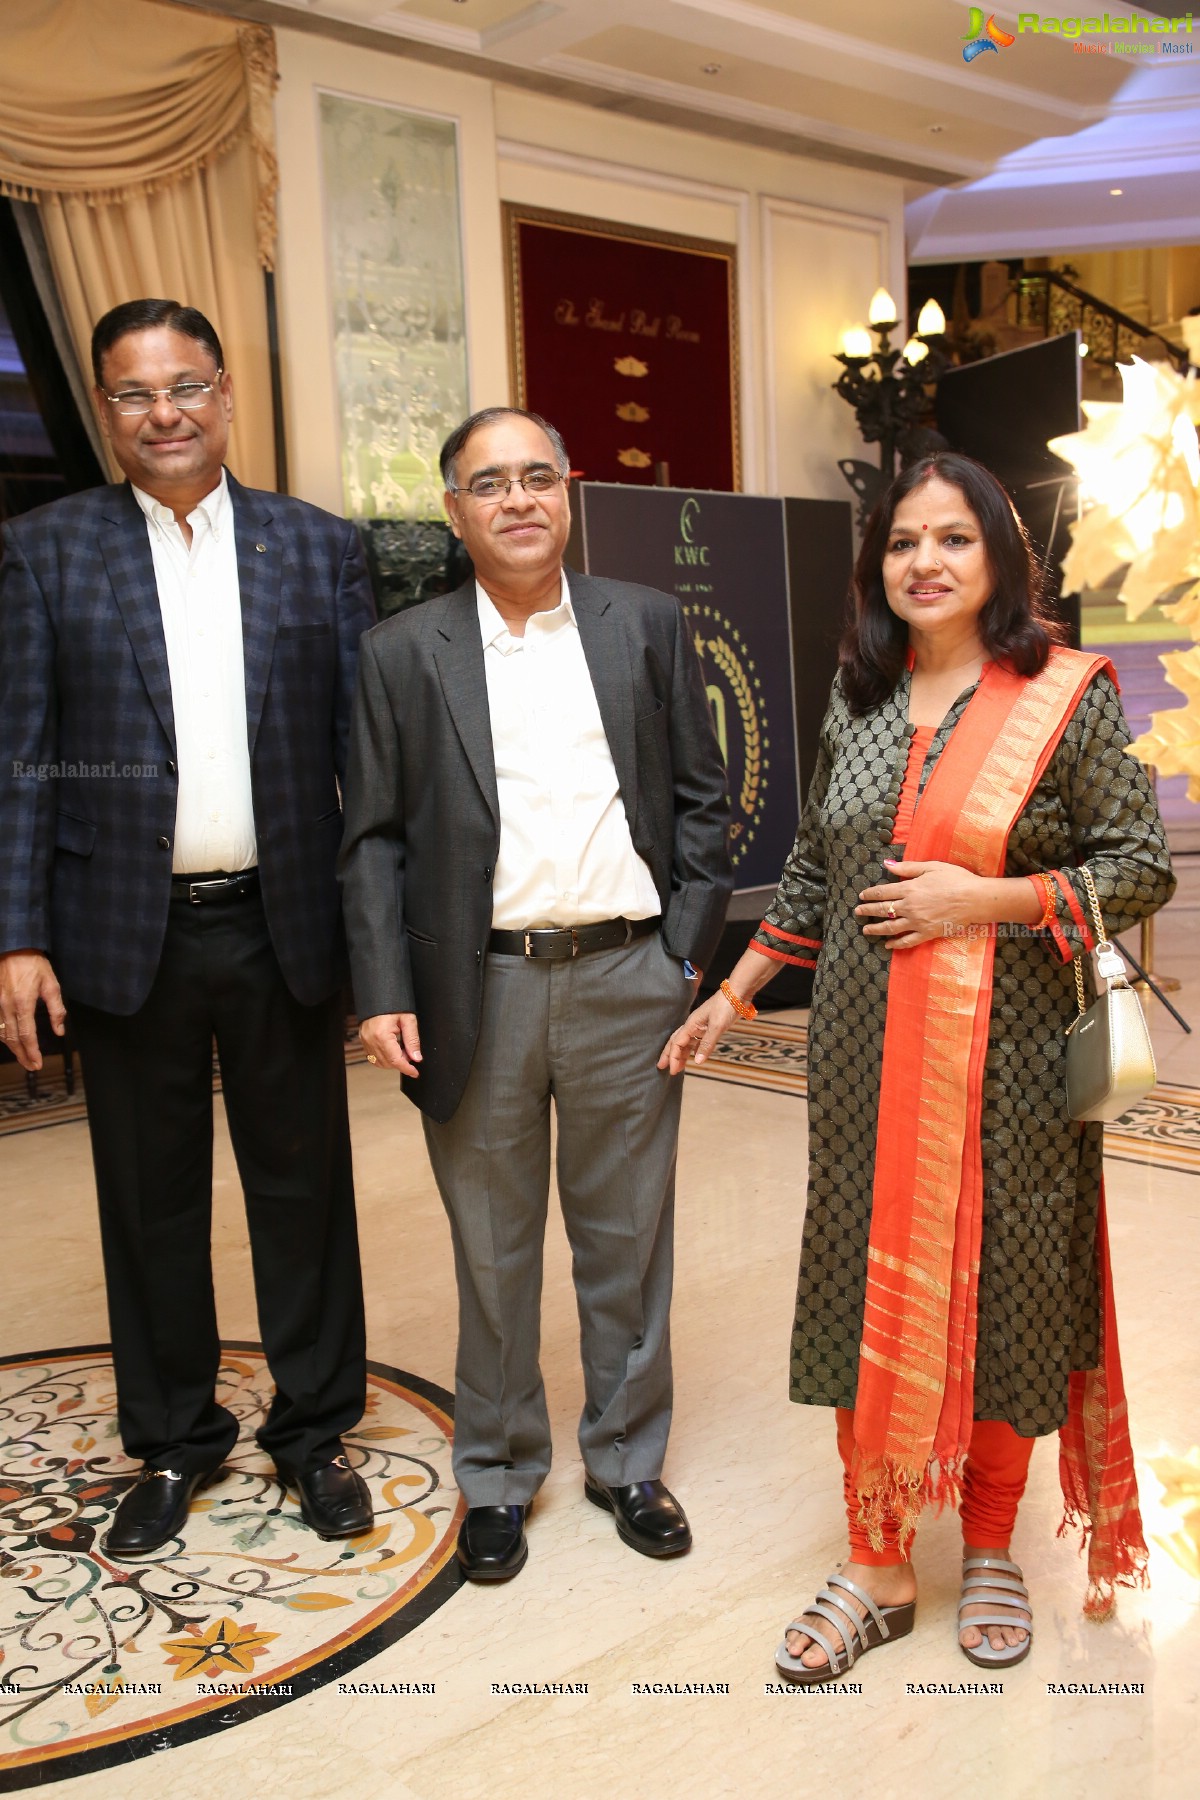 Kamal Watch Co. Celebrates 50th Anniversary at Taj Krishna